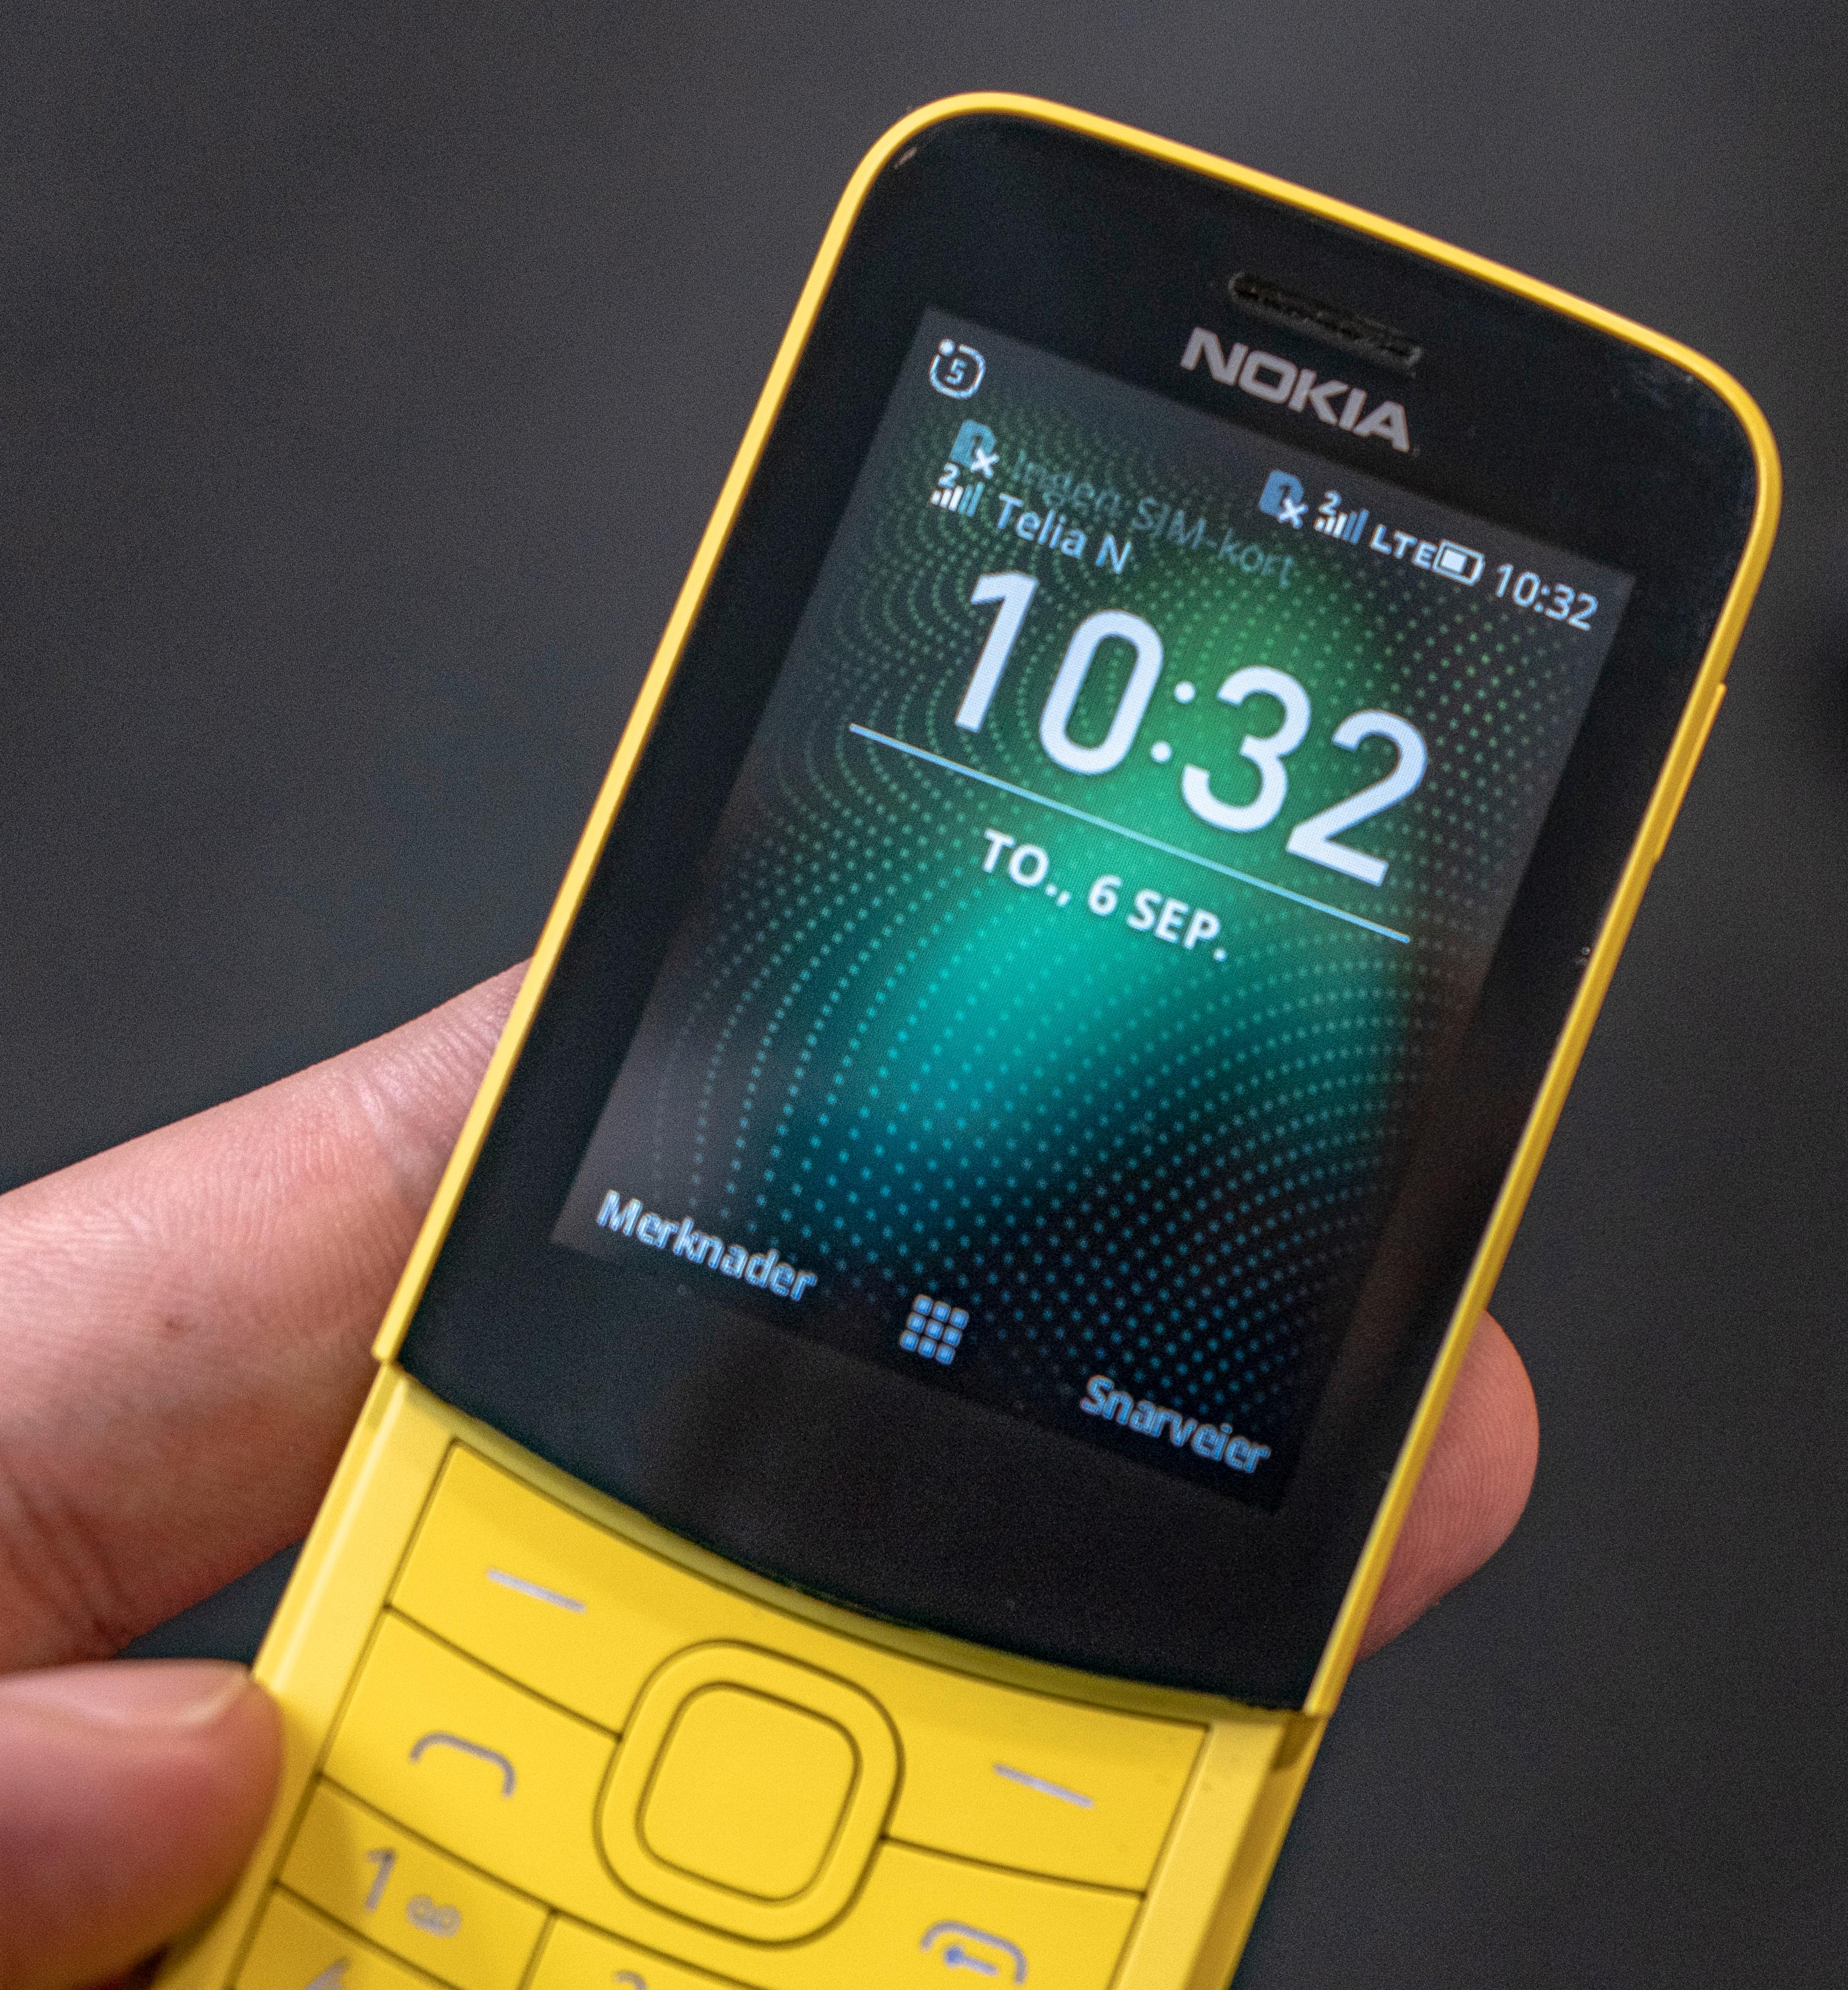 Slik ser hjemmeskjermen ut på 8110 4G. Den ser tilforlatelig ut som en av Nokias gamle knappofoner, men her er det et langt mer komplekst operativsystem som kjører – uten at du får særlig nytte igjen for det.